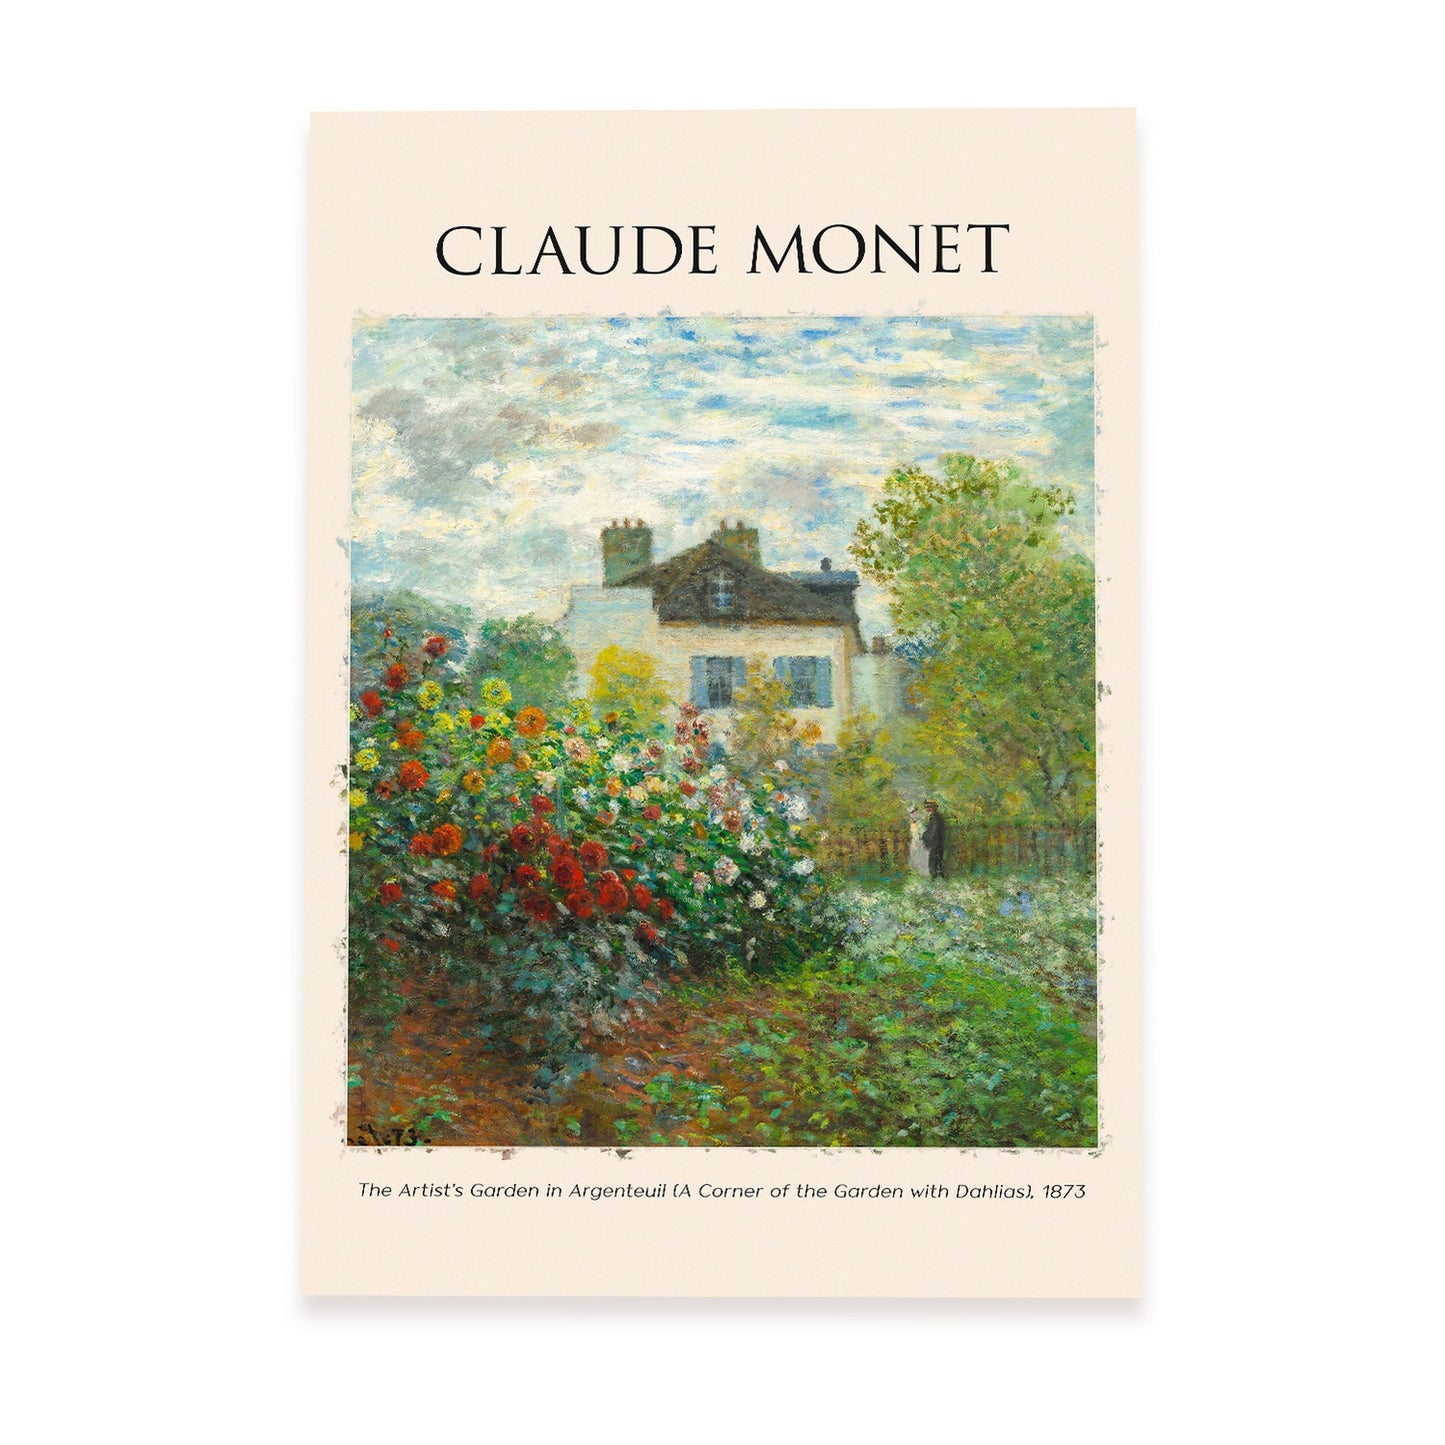 Lámina de Artists Garden en Argenteuil inspirada en Claude Monet